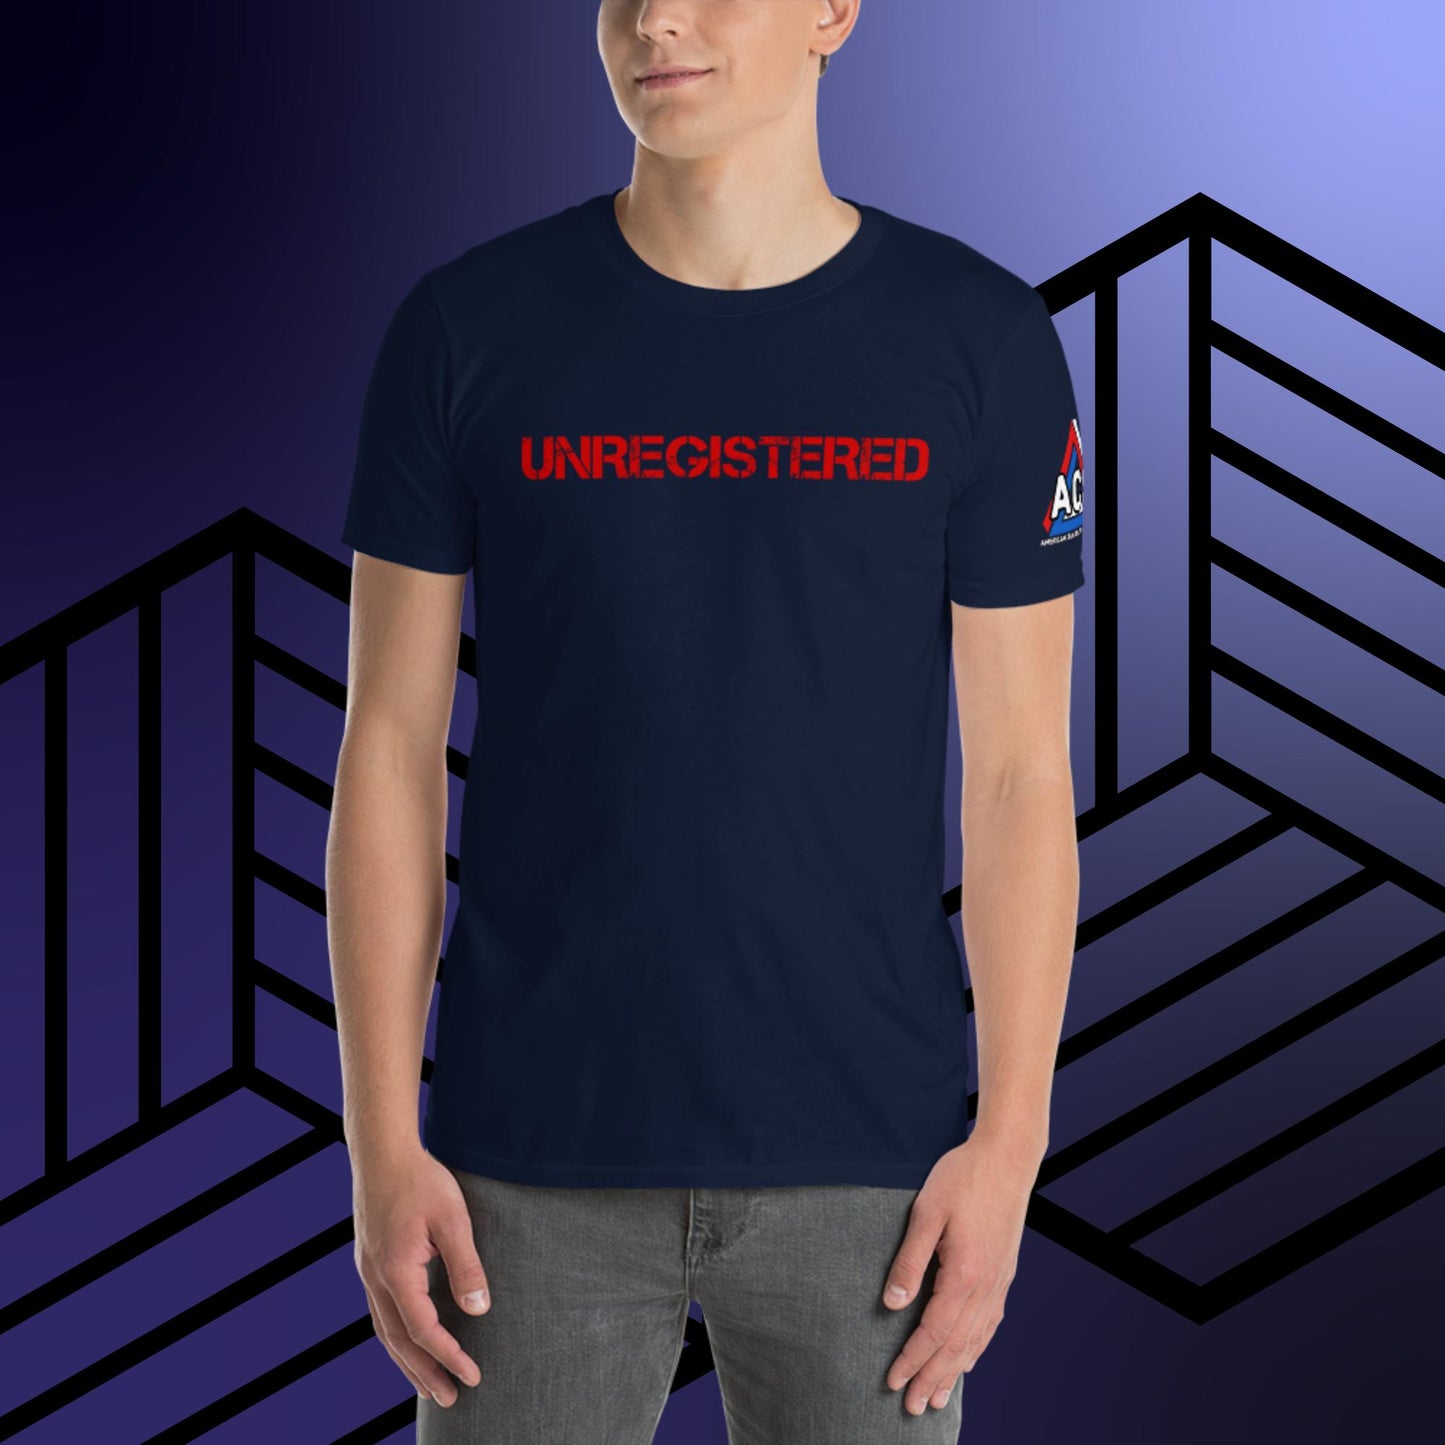 ACS Unregistered T-Shirt